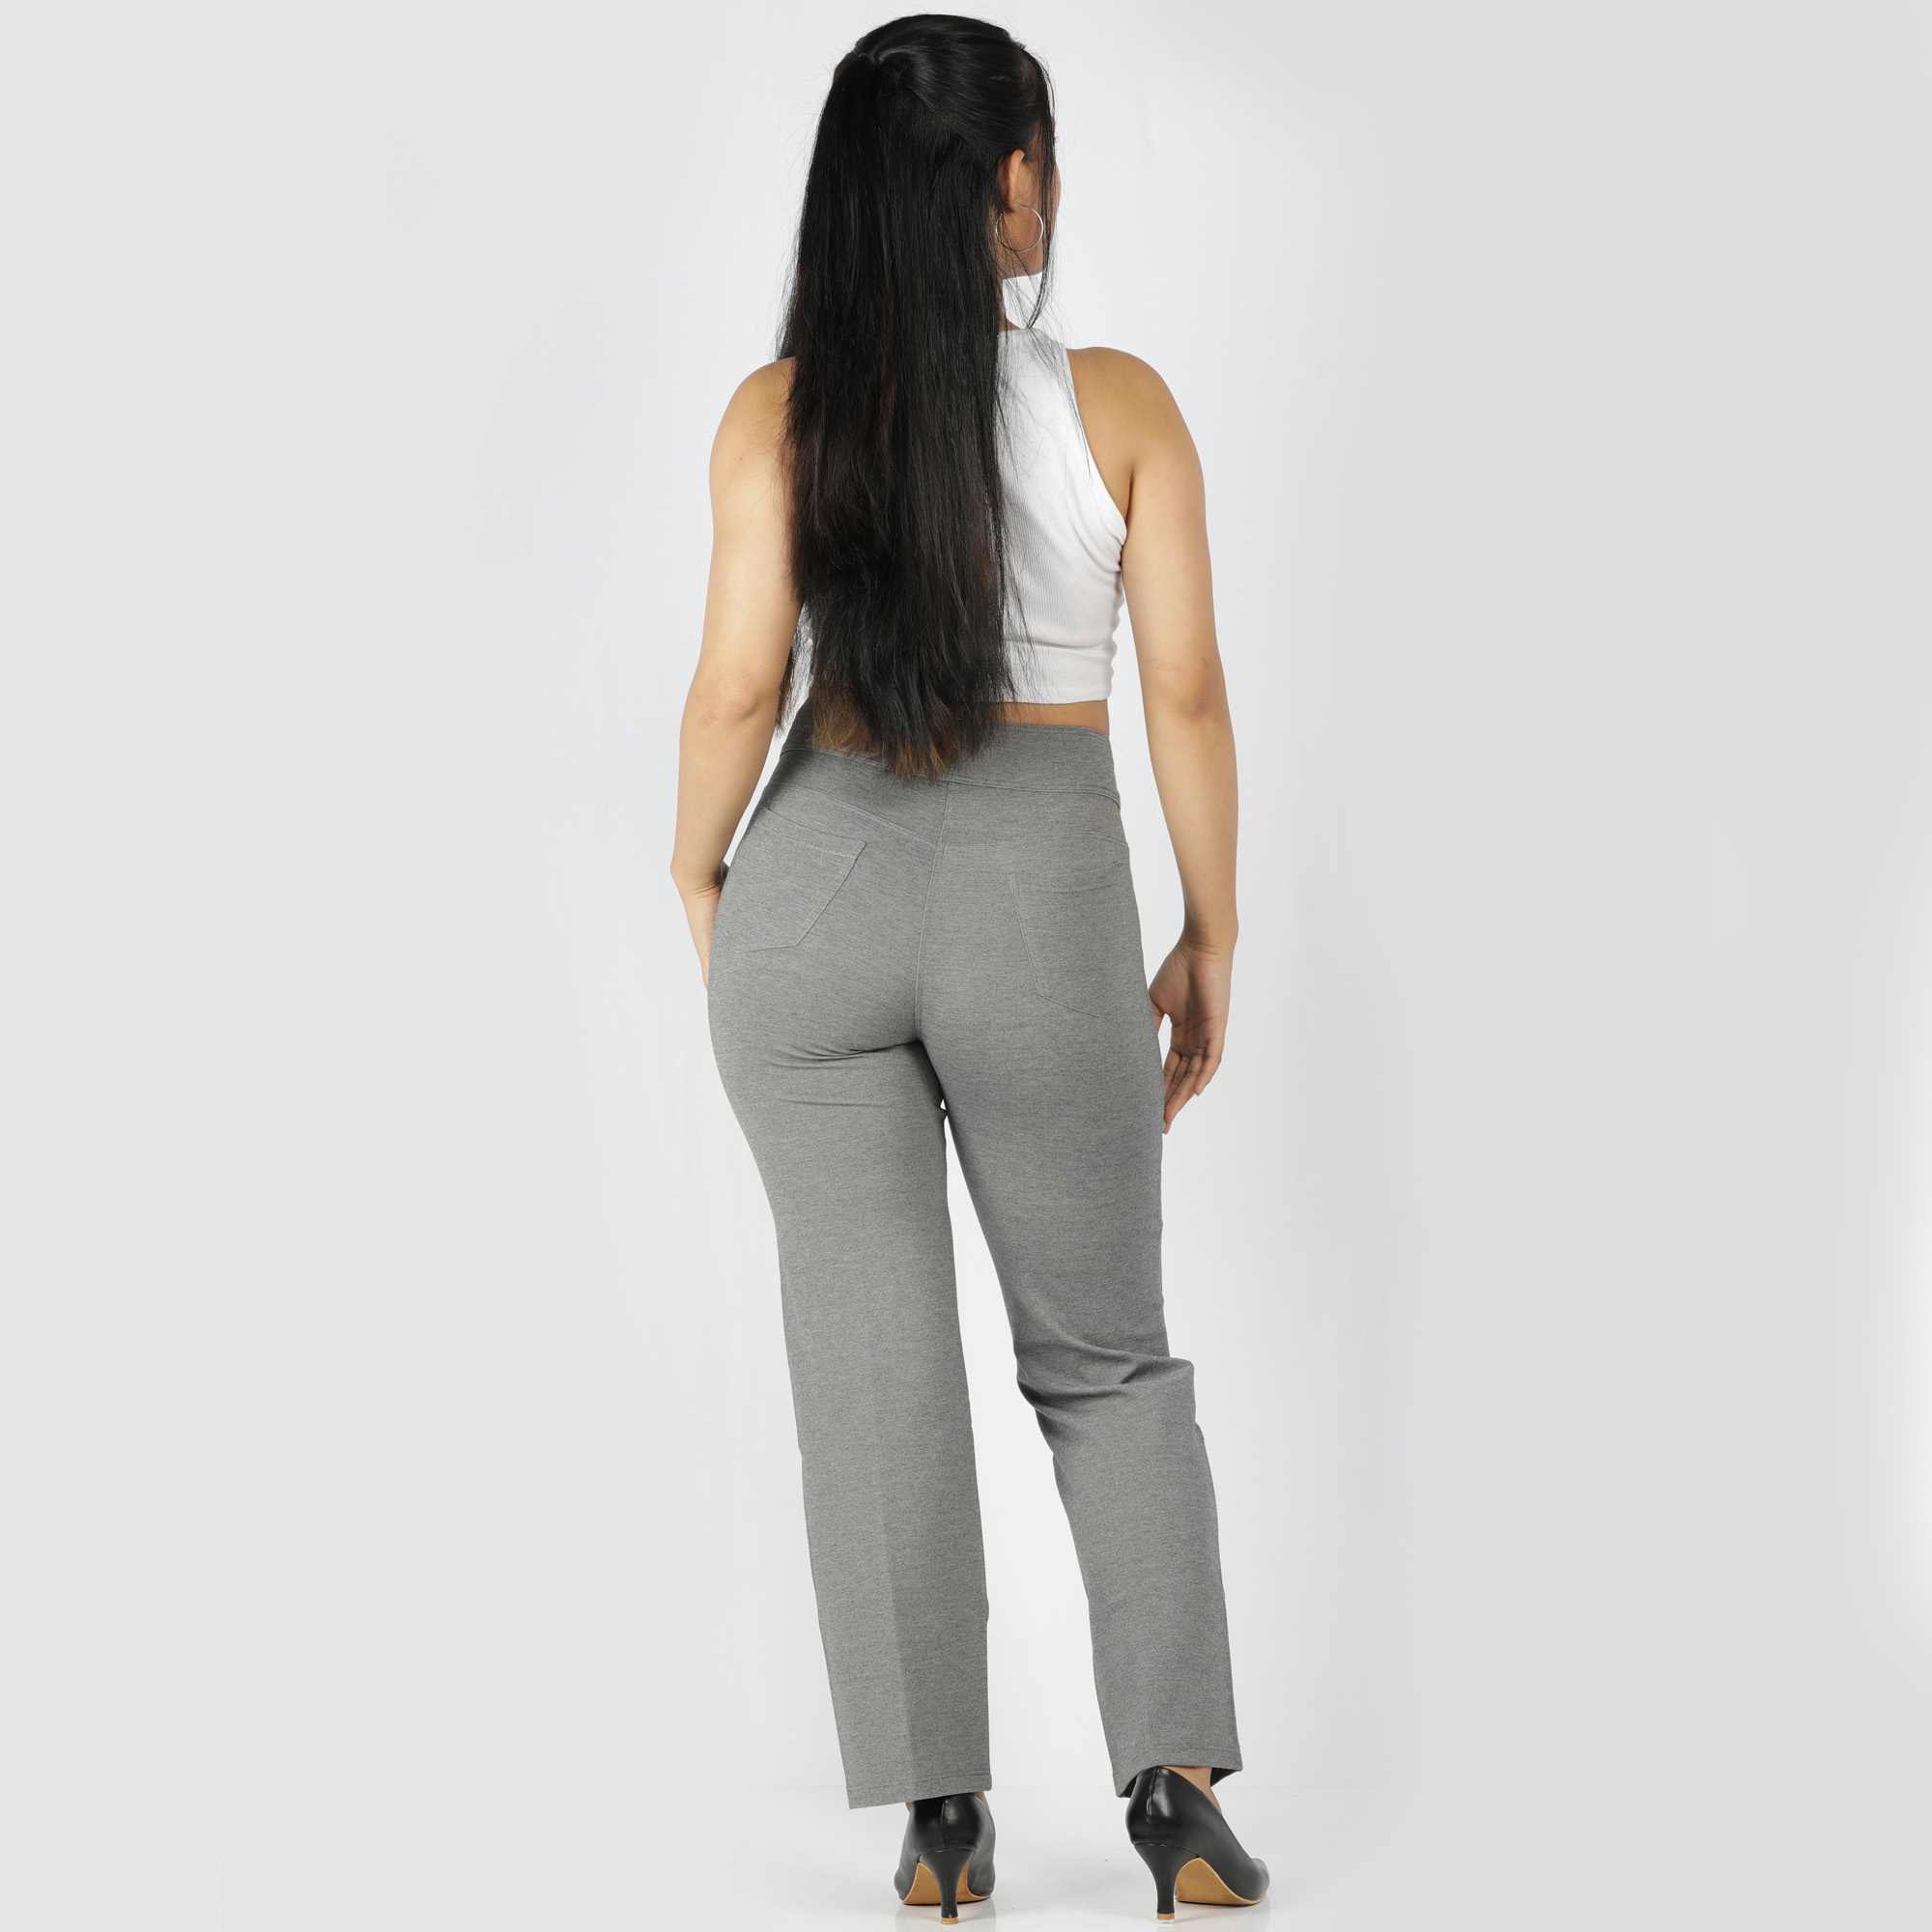 grey pants women